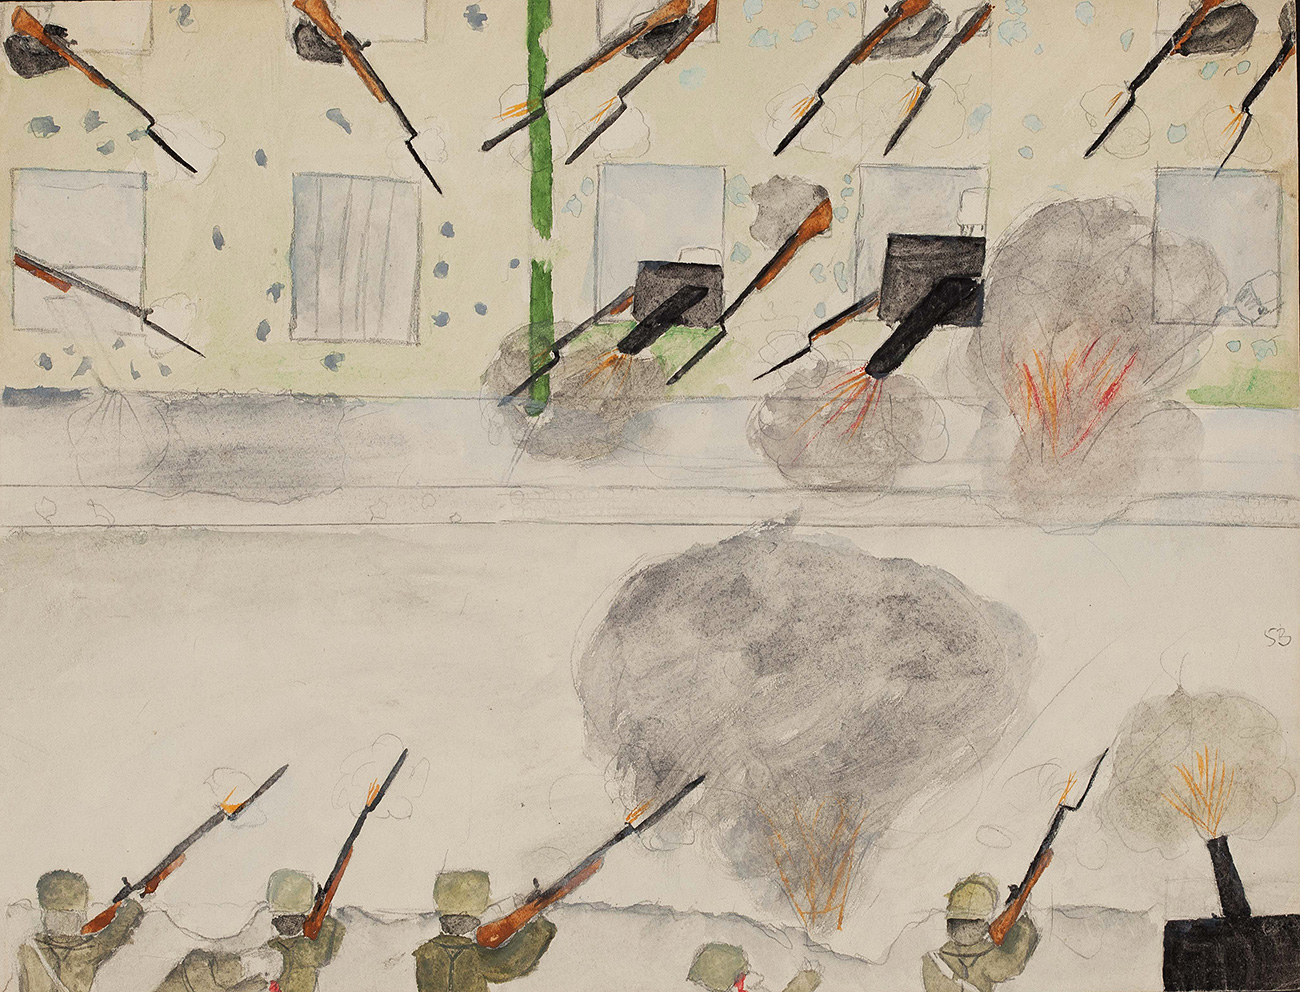 “La colección muestra los eventos en todo su color y diversidad”, explica Lukiánov. // “Fuego cruzado en la calle”, Moscú, noviembre de 1917.